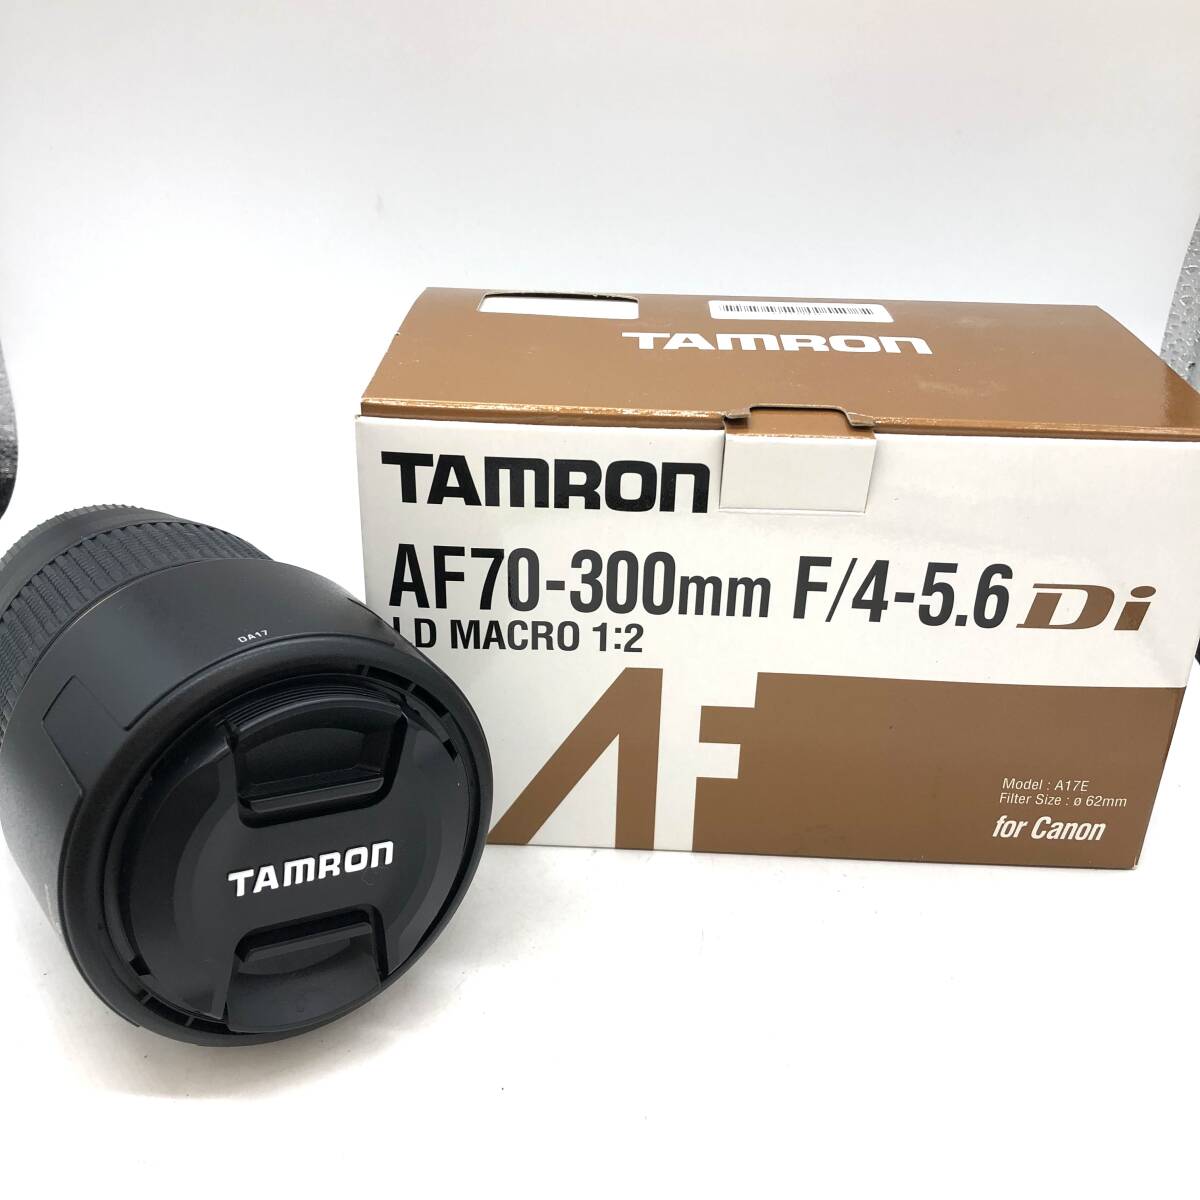 【美品】TAMRON タムロン AF 70-300mm f4-5.6 Di LD MACRO 1:2 タムロン カメラレンズキャノン用 A17E_画像1